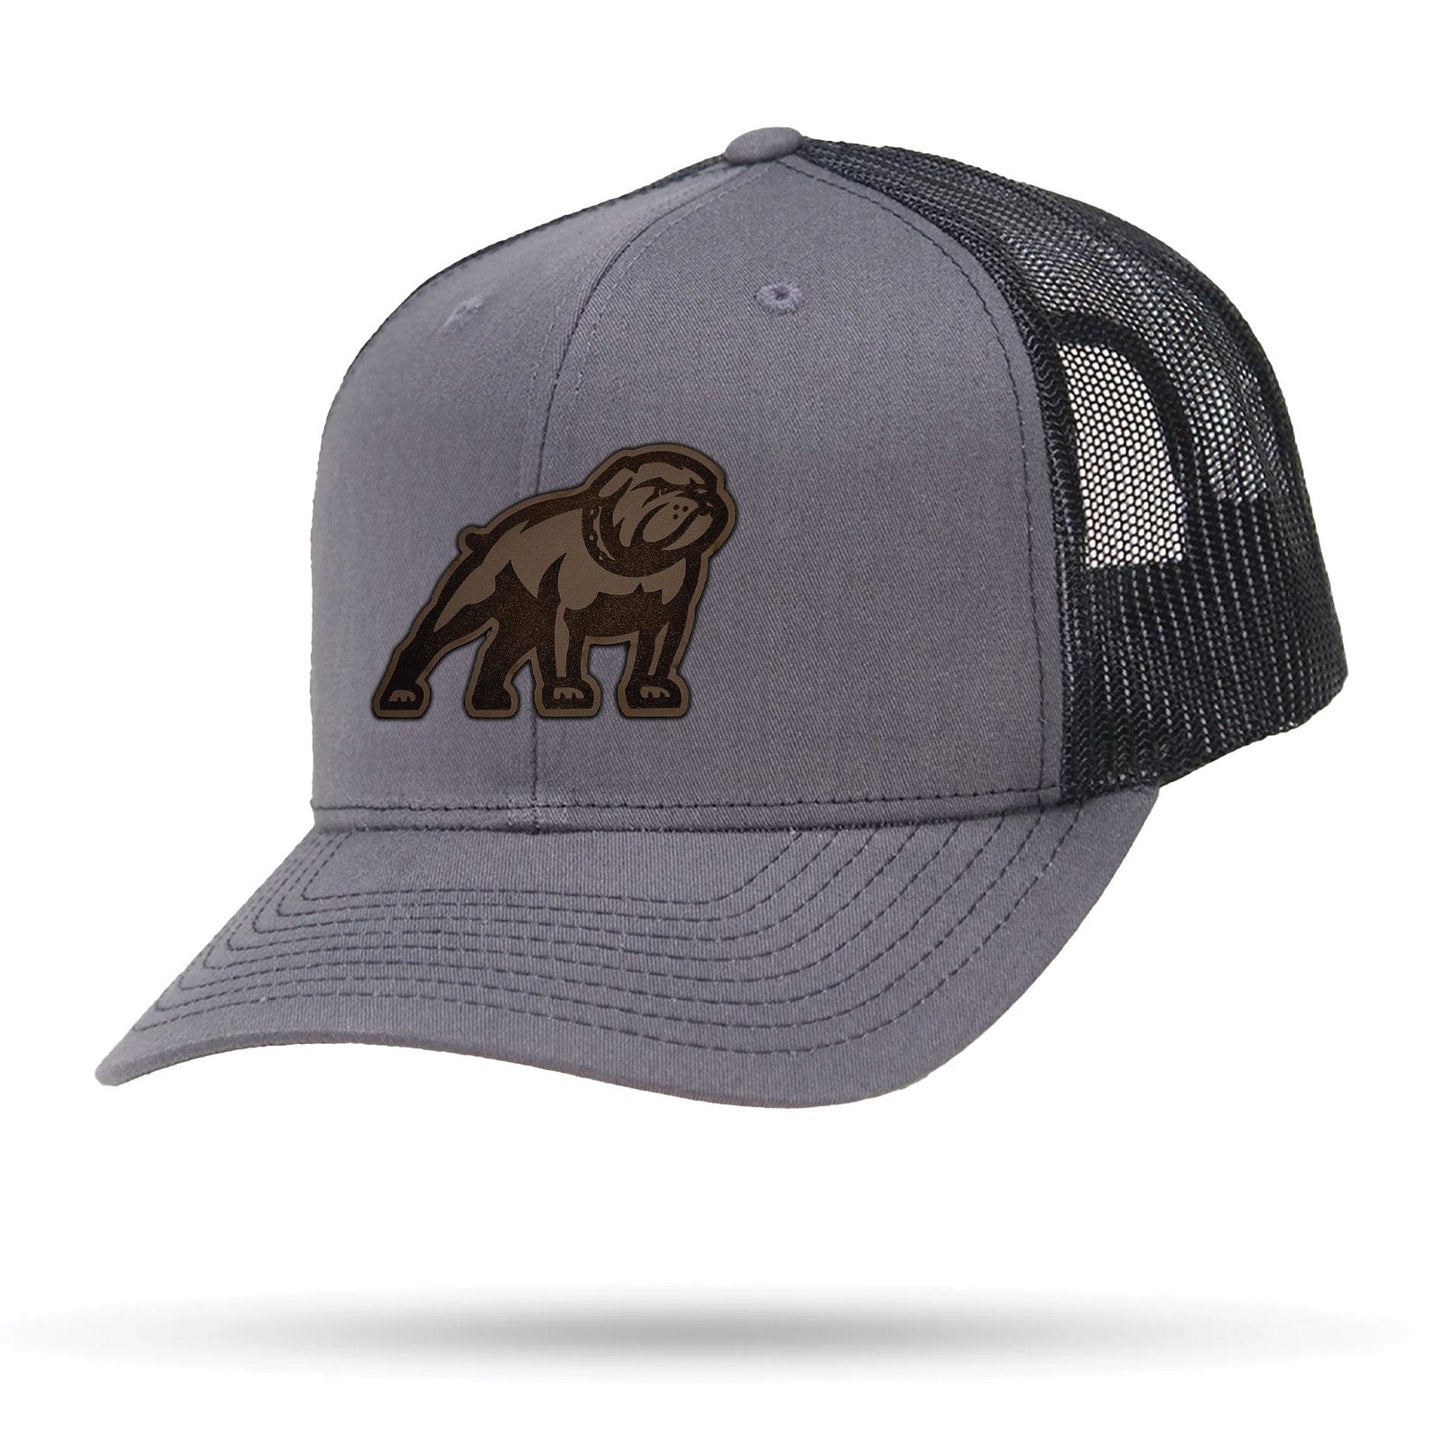 WYR Montana Western Bulldog Leather Patch Hat - WYR